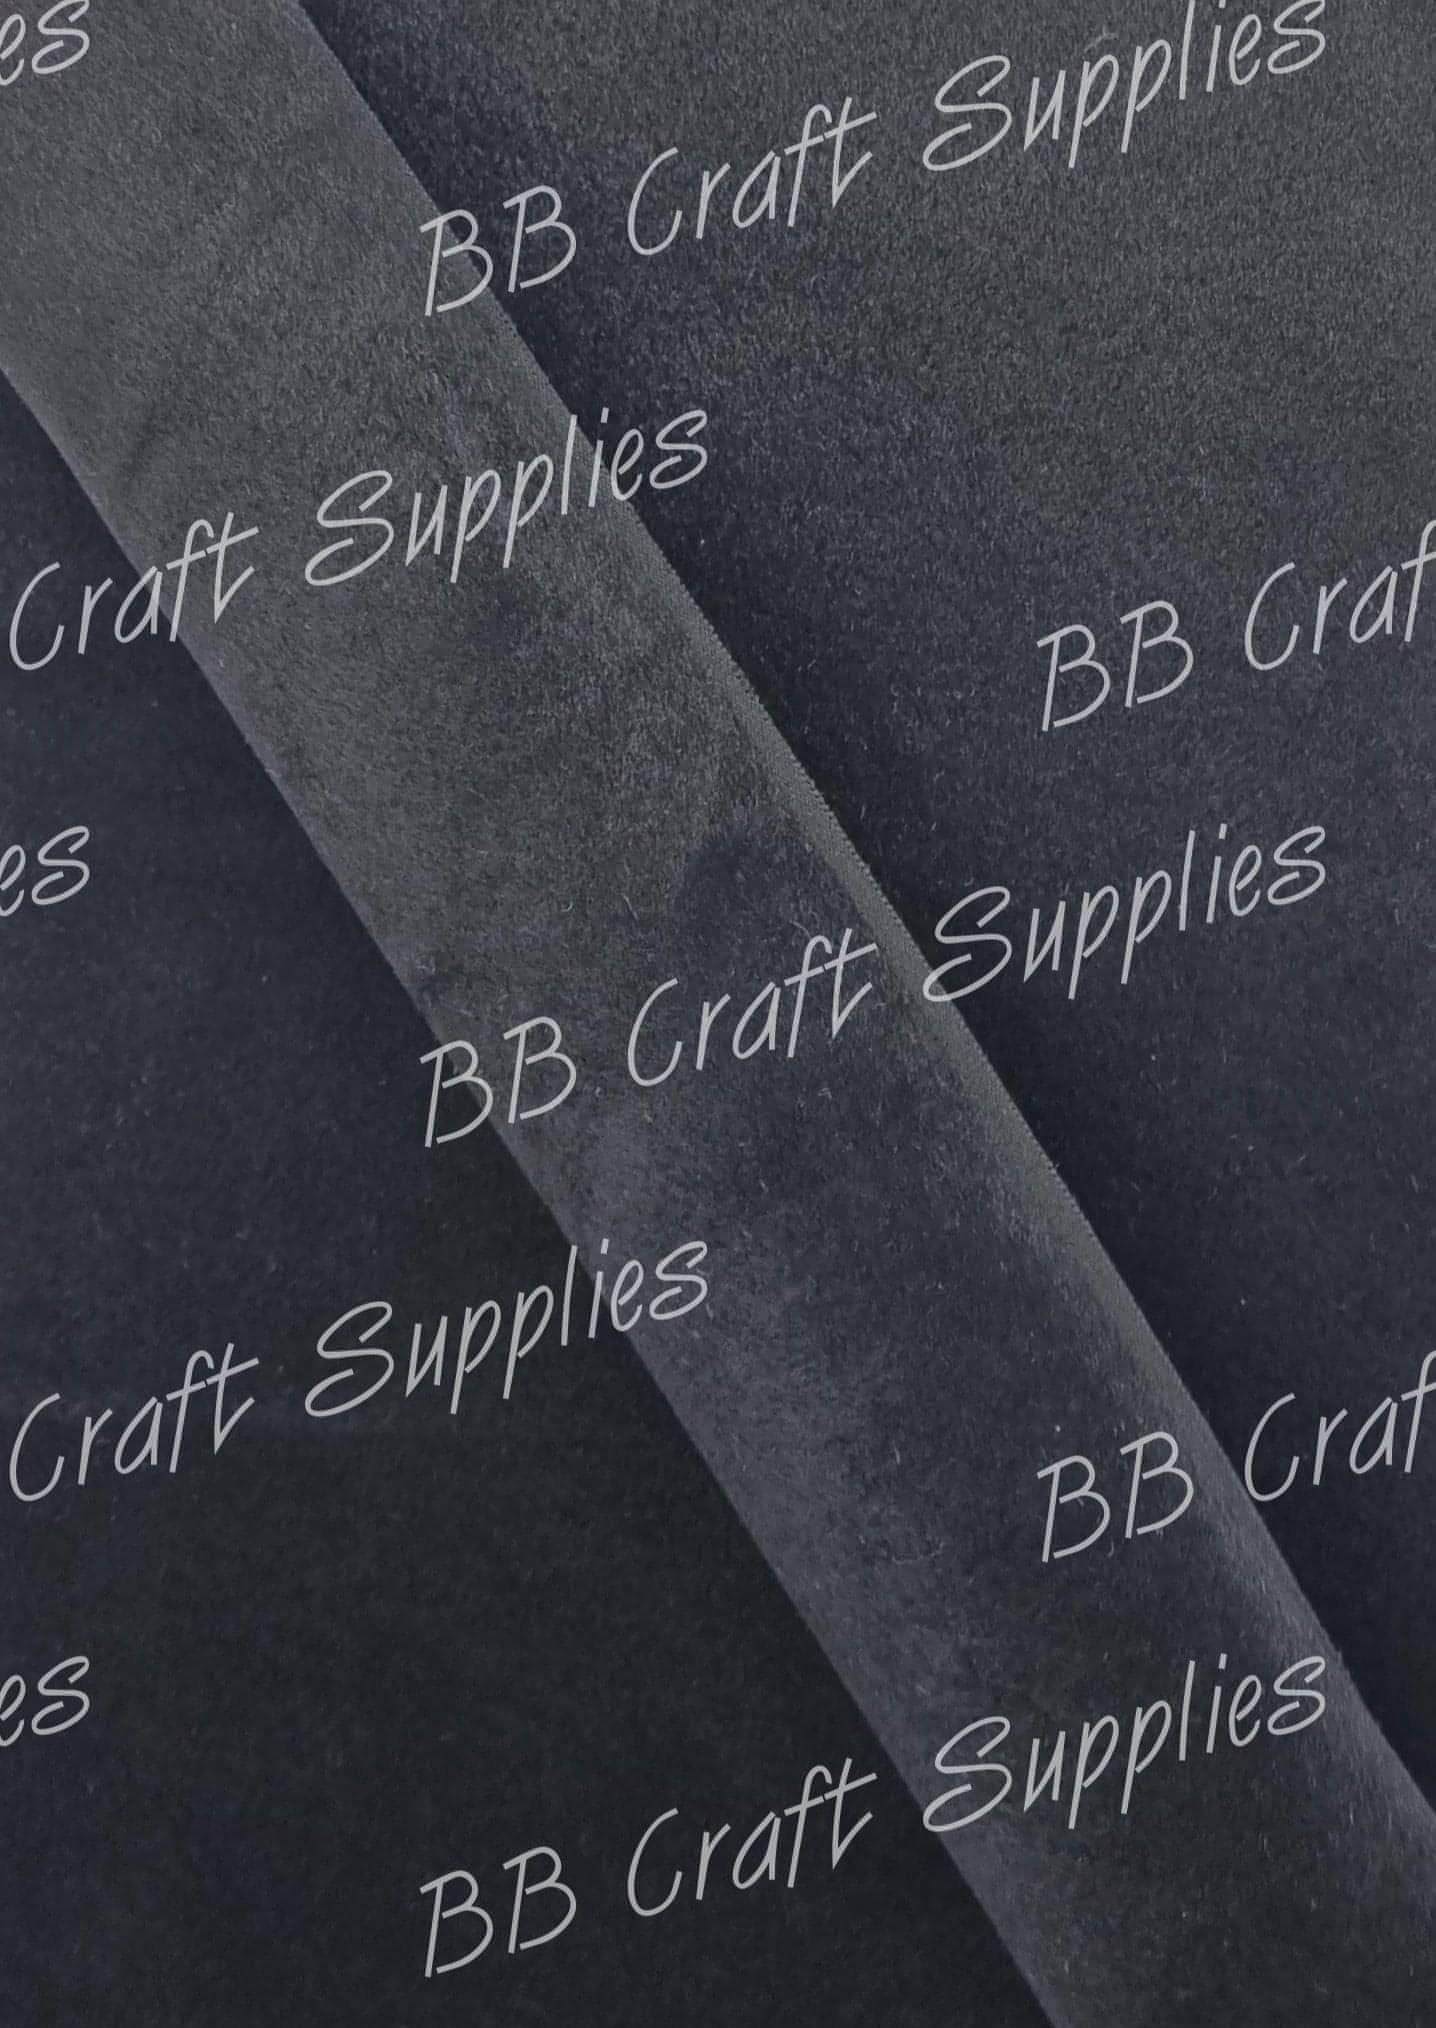 Premium Velvet Fabric - Black - crushed, soft, velvet - Bare Butler Faux Leather Supplies 